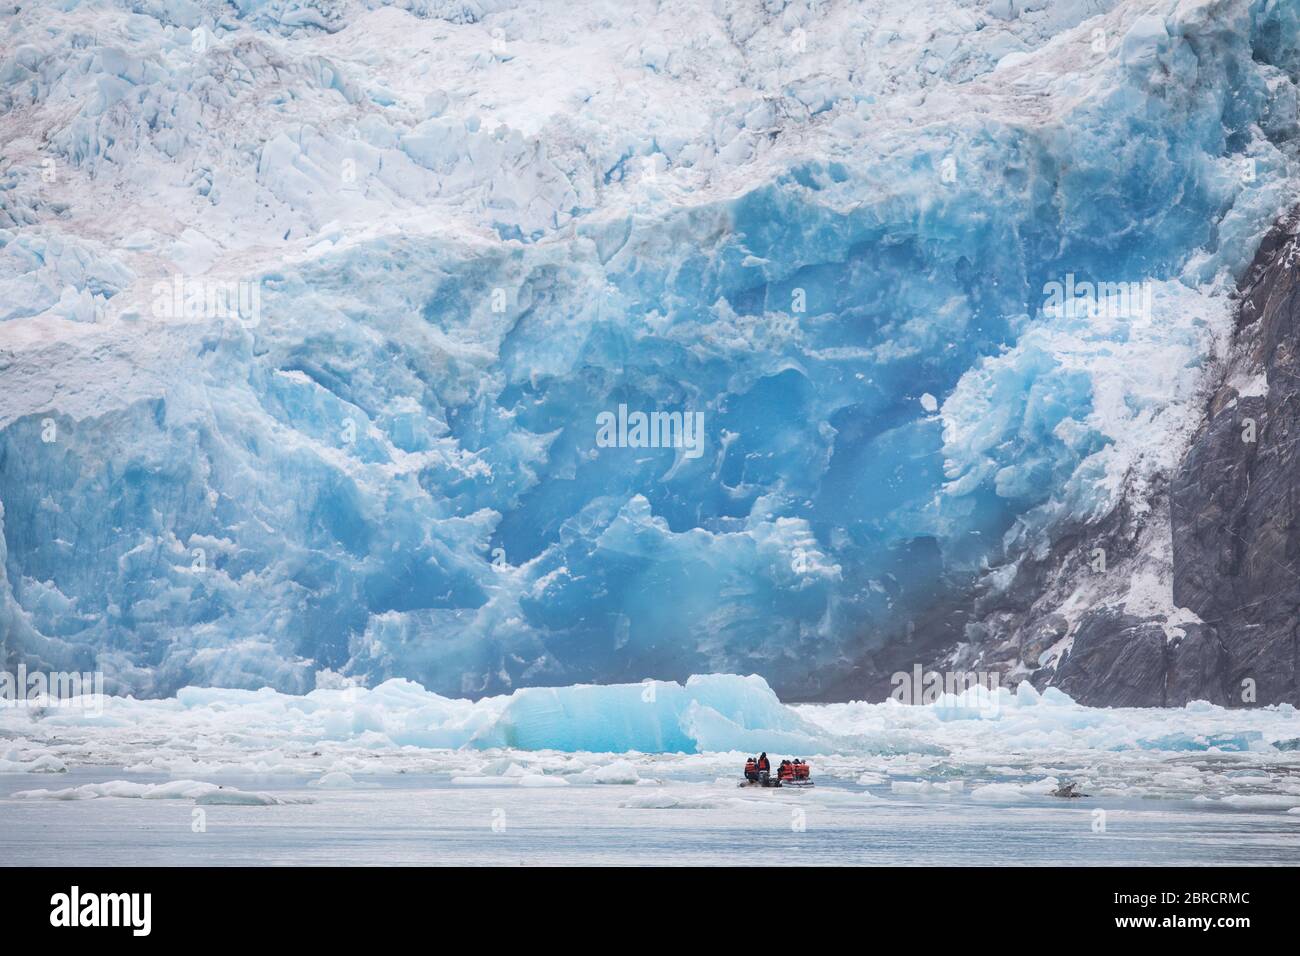 Touristen auf einem Skiff Boot erhalten eine aus der Nähe szenische Ansicht von Eisbergen Kalbskälte vom South Sawyer Glacier, schwimmend auf Tracy Arm Fjord, Südost-Alaska, USA Stockfoto